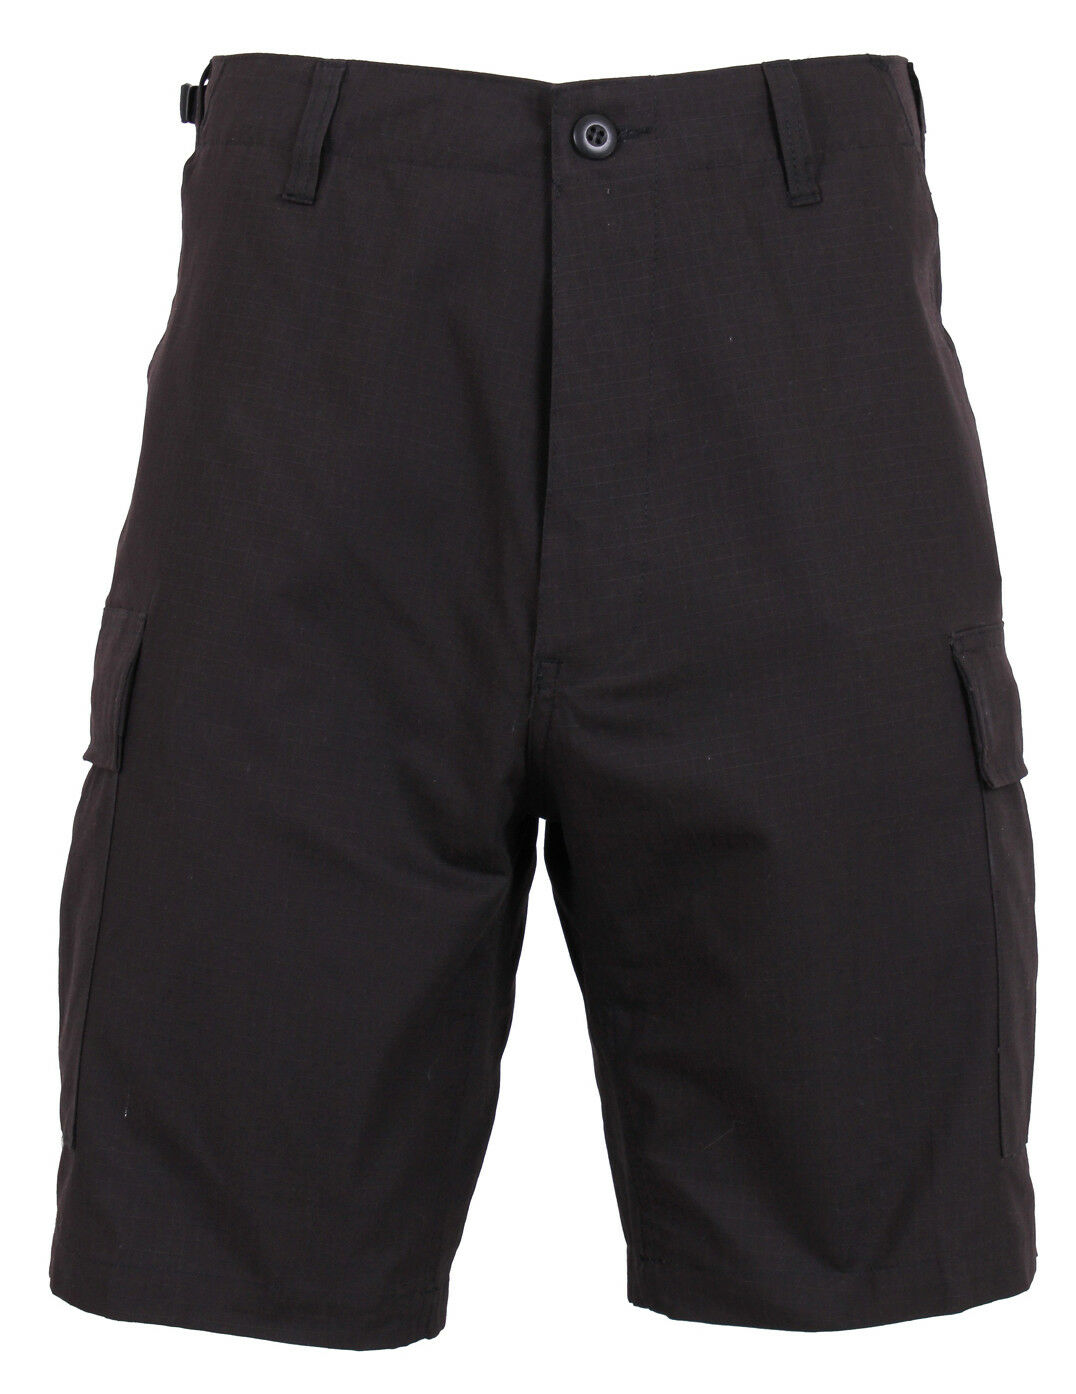 Rothco Tactical BDU Shorts - Black